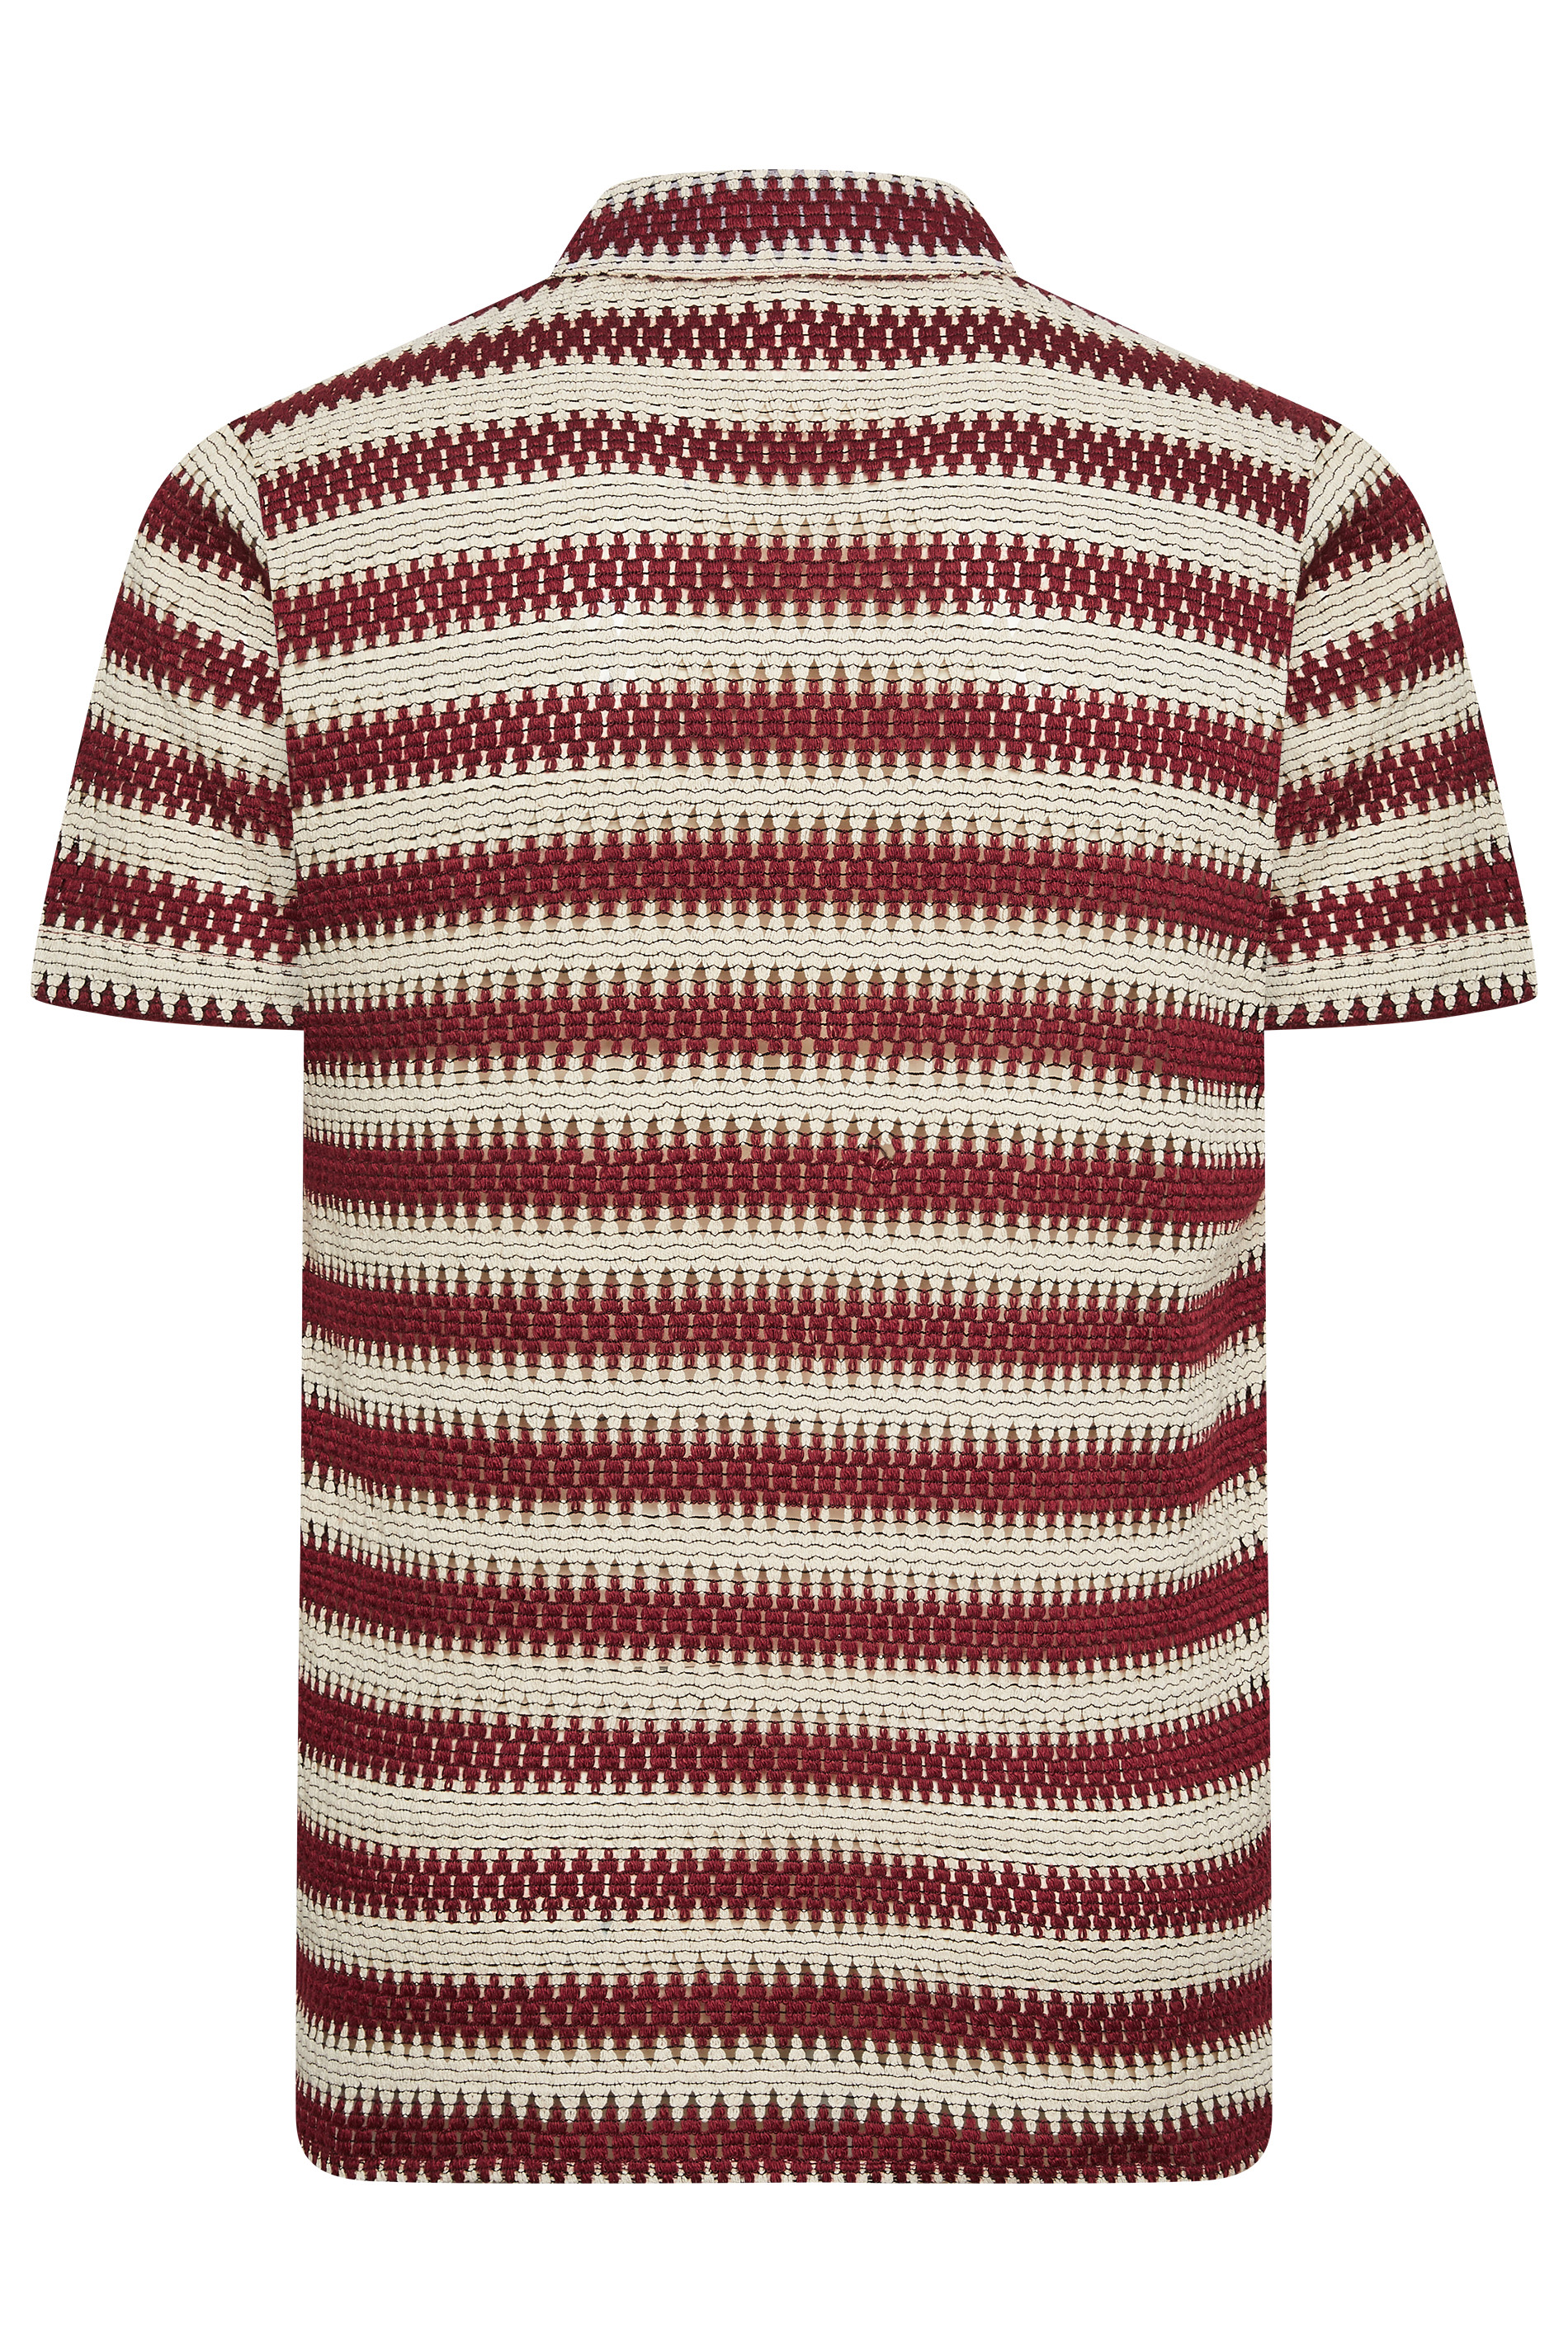 BadRhino Big & Tall  Red Textured Crochet Short Sleeve Shirt | BadRhino 3